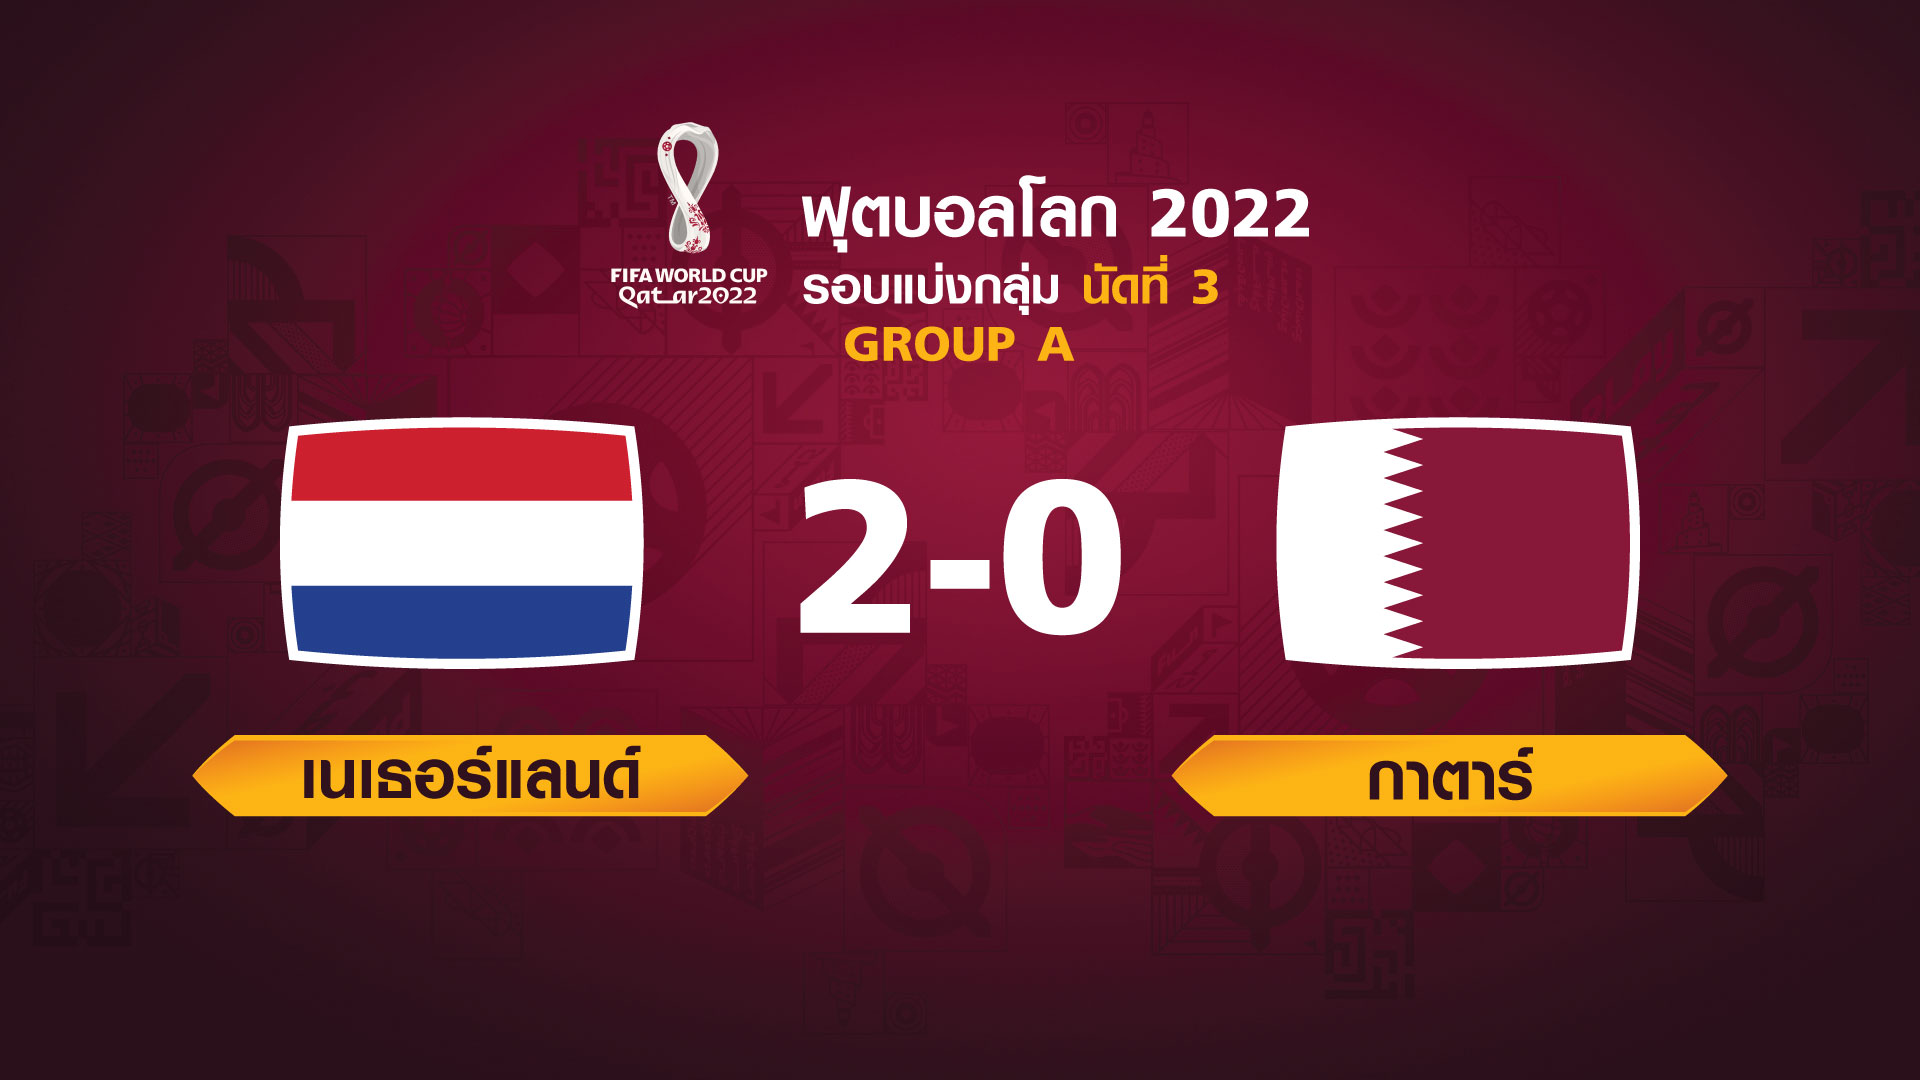 ฟุตบอลโลก 2022 รอบแบ่งกลุ่ม นัดที่ 3 ระหว่าง NETHERLANDS VS QATAR